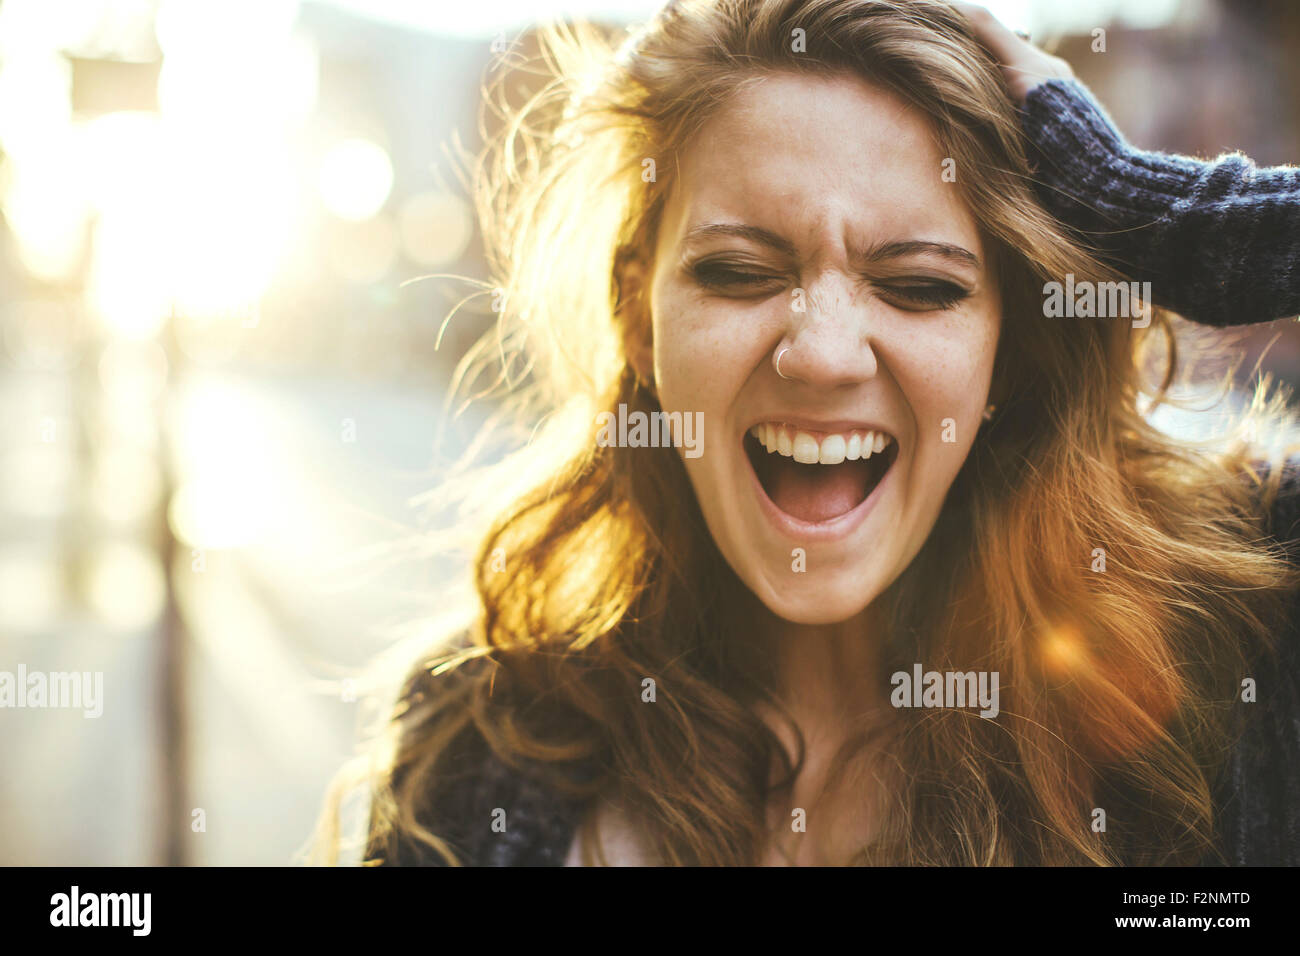 Caucasian woman shouting outdoors Stock Photo